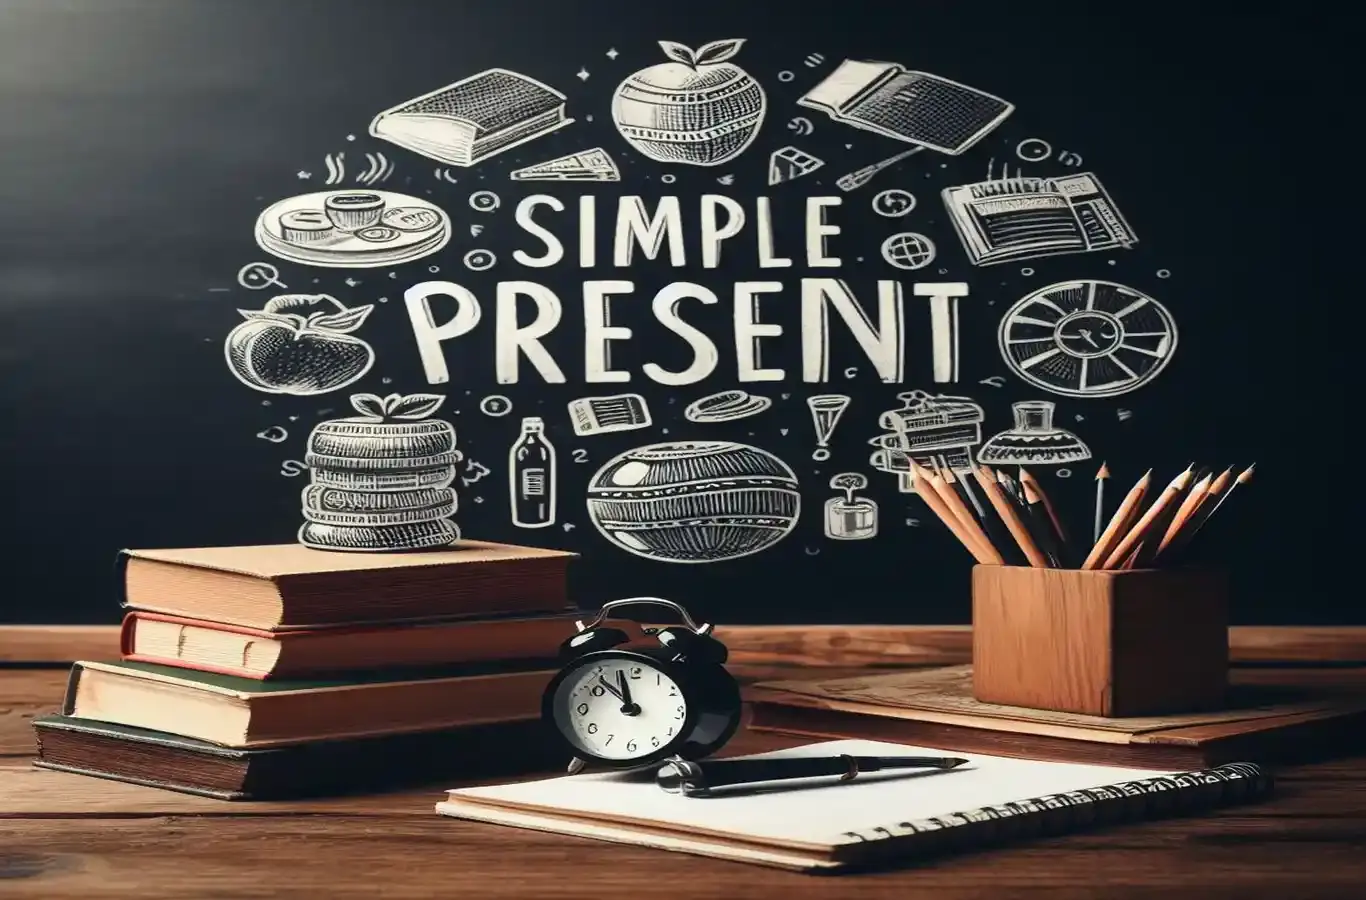 imagem de livros em cima da mesa e ao fundo um quadro negro de escola com o texto escrito :"simple present"